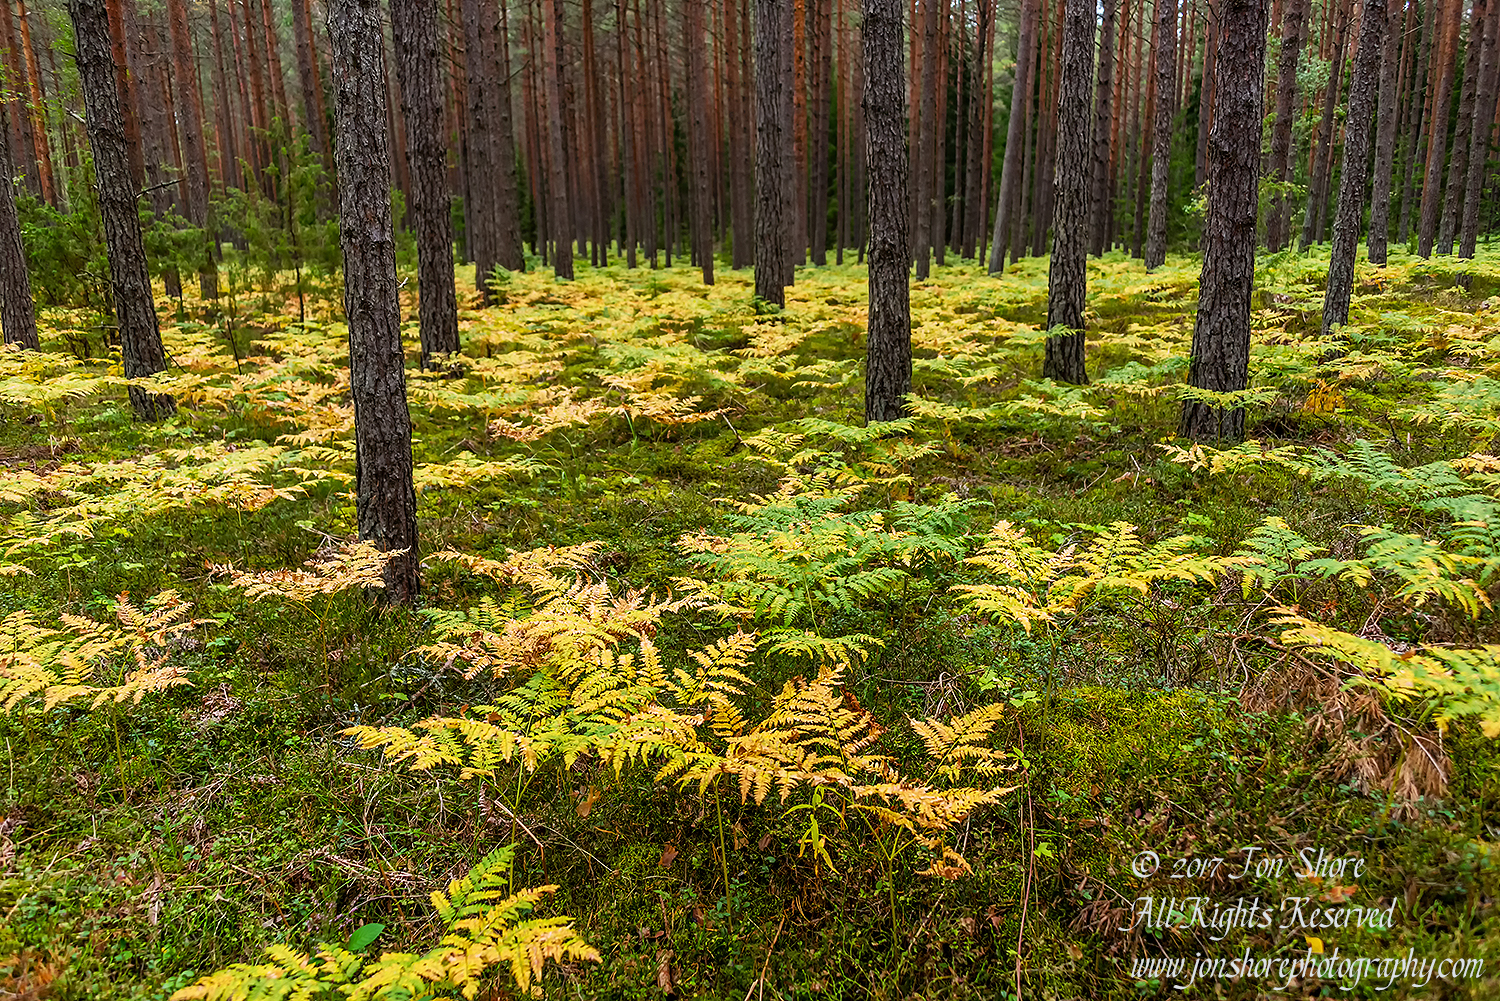 Latvia Forest September 2017 by Jon Shore